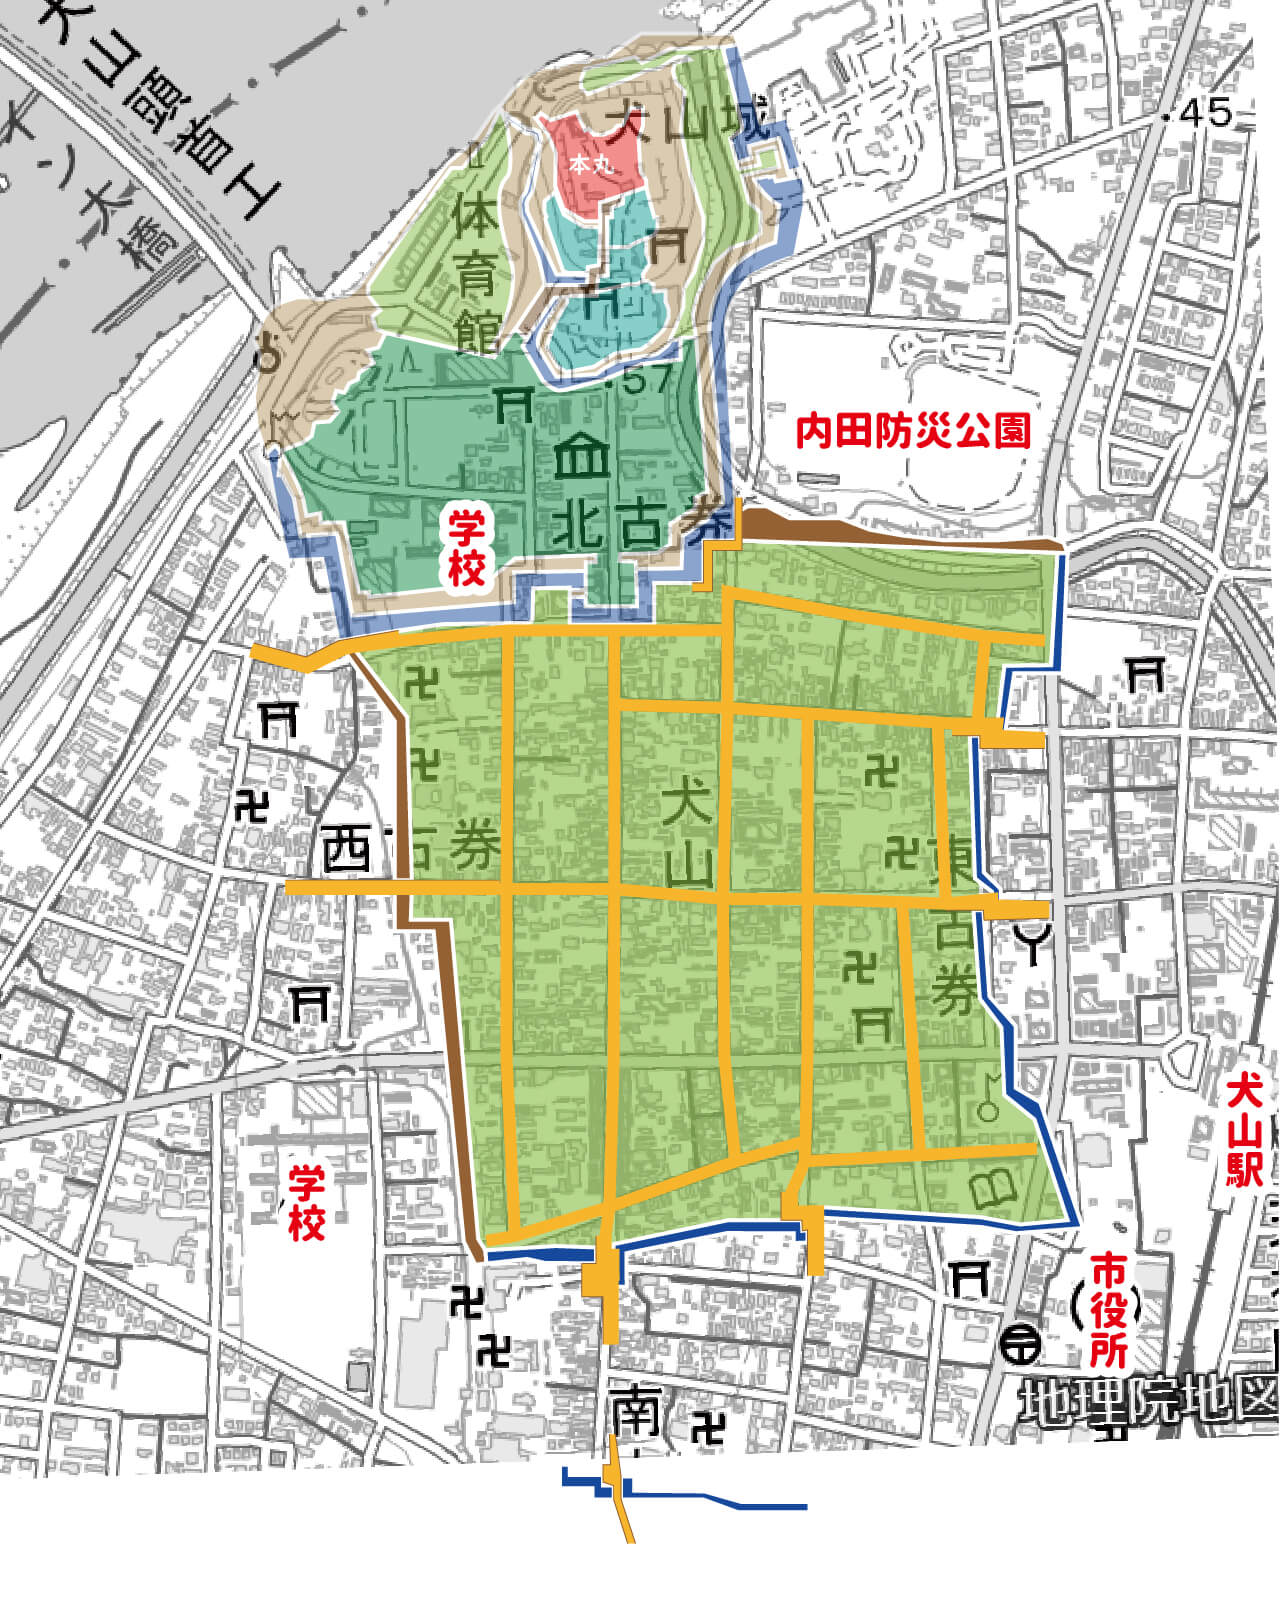 現在の地図と江戸時代の犬山城・犬山城下町を重ねた図。日本地理院地図に図を重ねた。